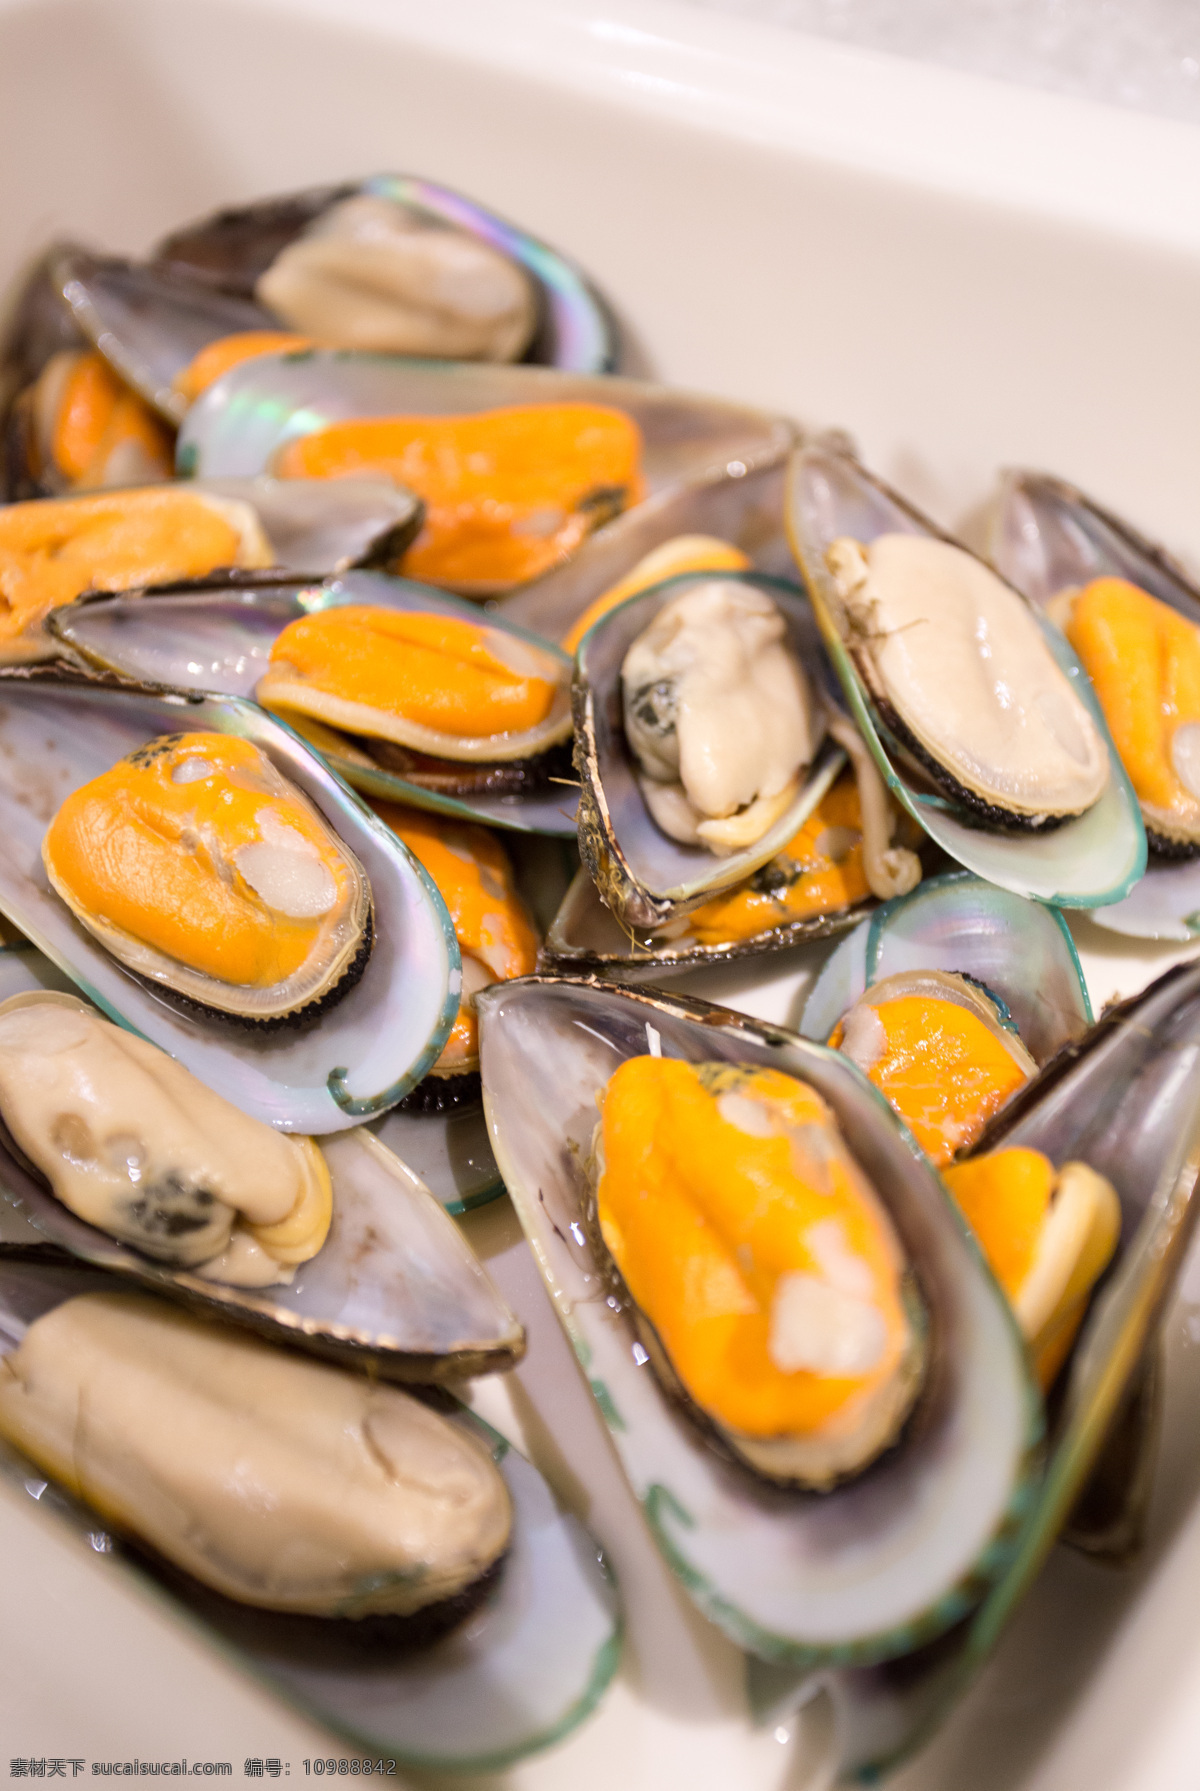 蛤蜊 海鲜 牡蛎 花蛤 海虹 菜品 餐饮美食 传统美食